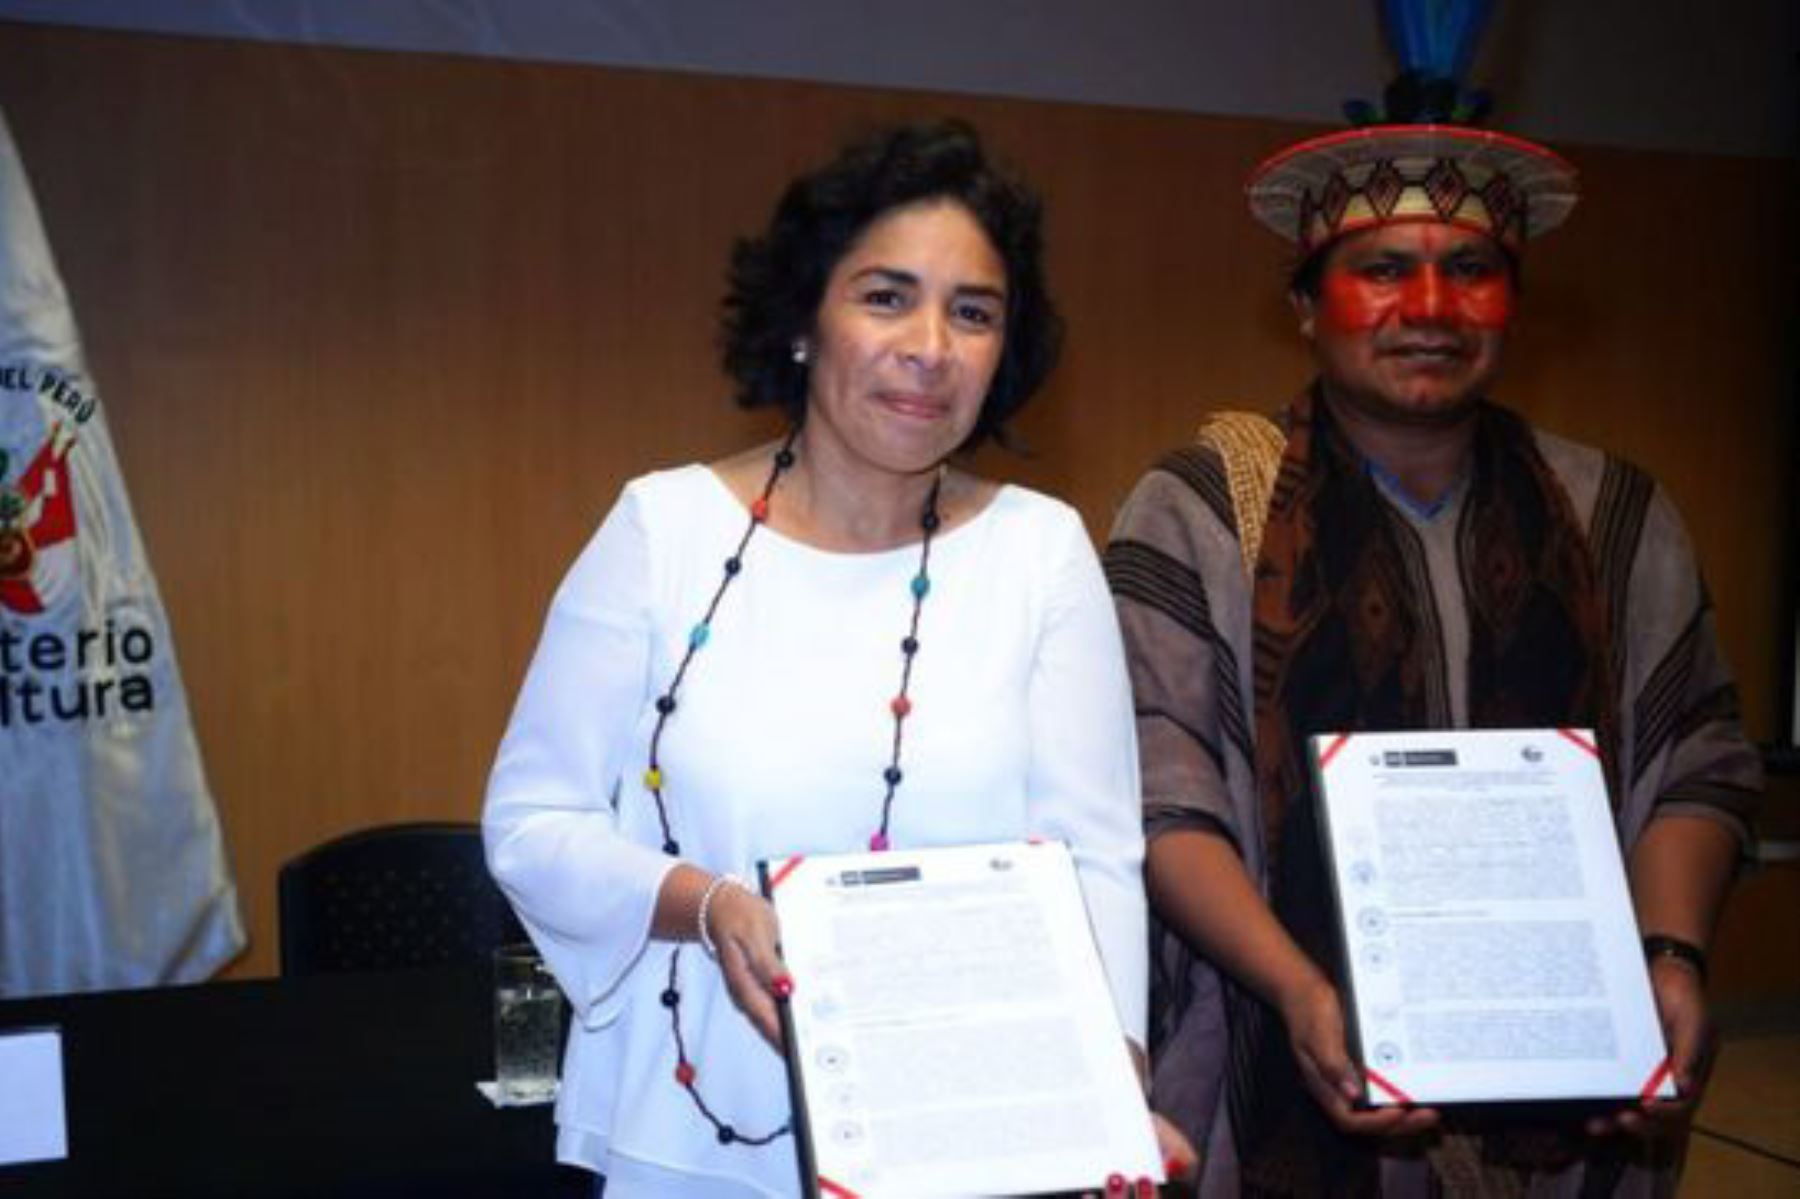 Sector Cultura fortalecerá protección y defensa de pueblos indígenas en aislamiento.